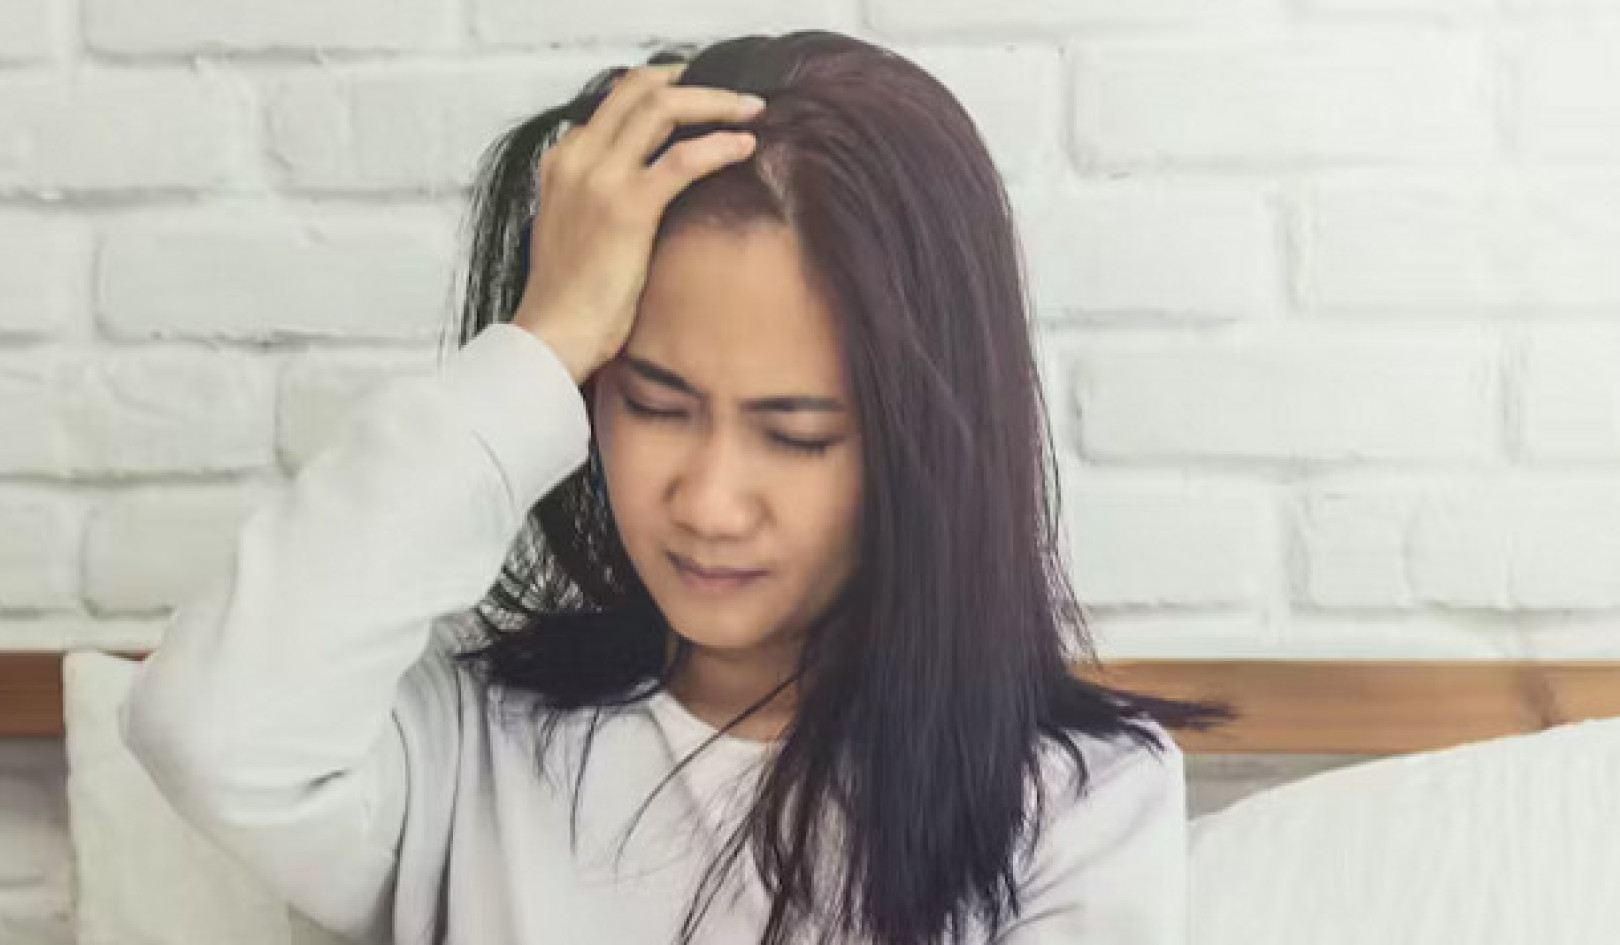 Chứng đau nửa đầu: Rối loạn đau đầu không được chẩn đoán và điều trị